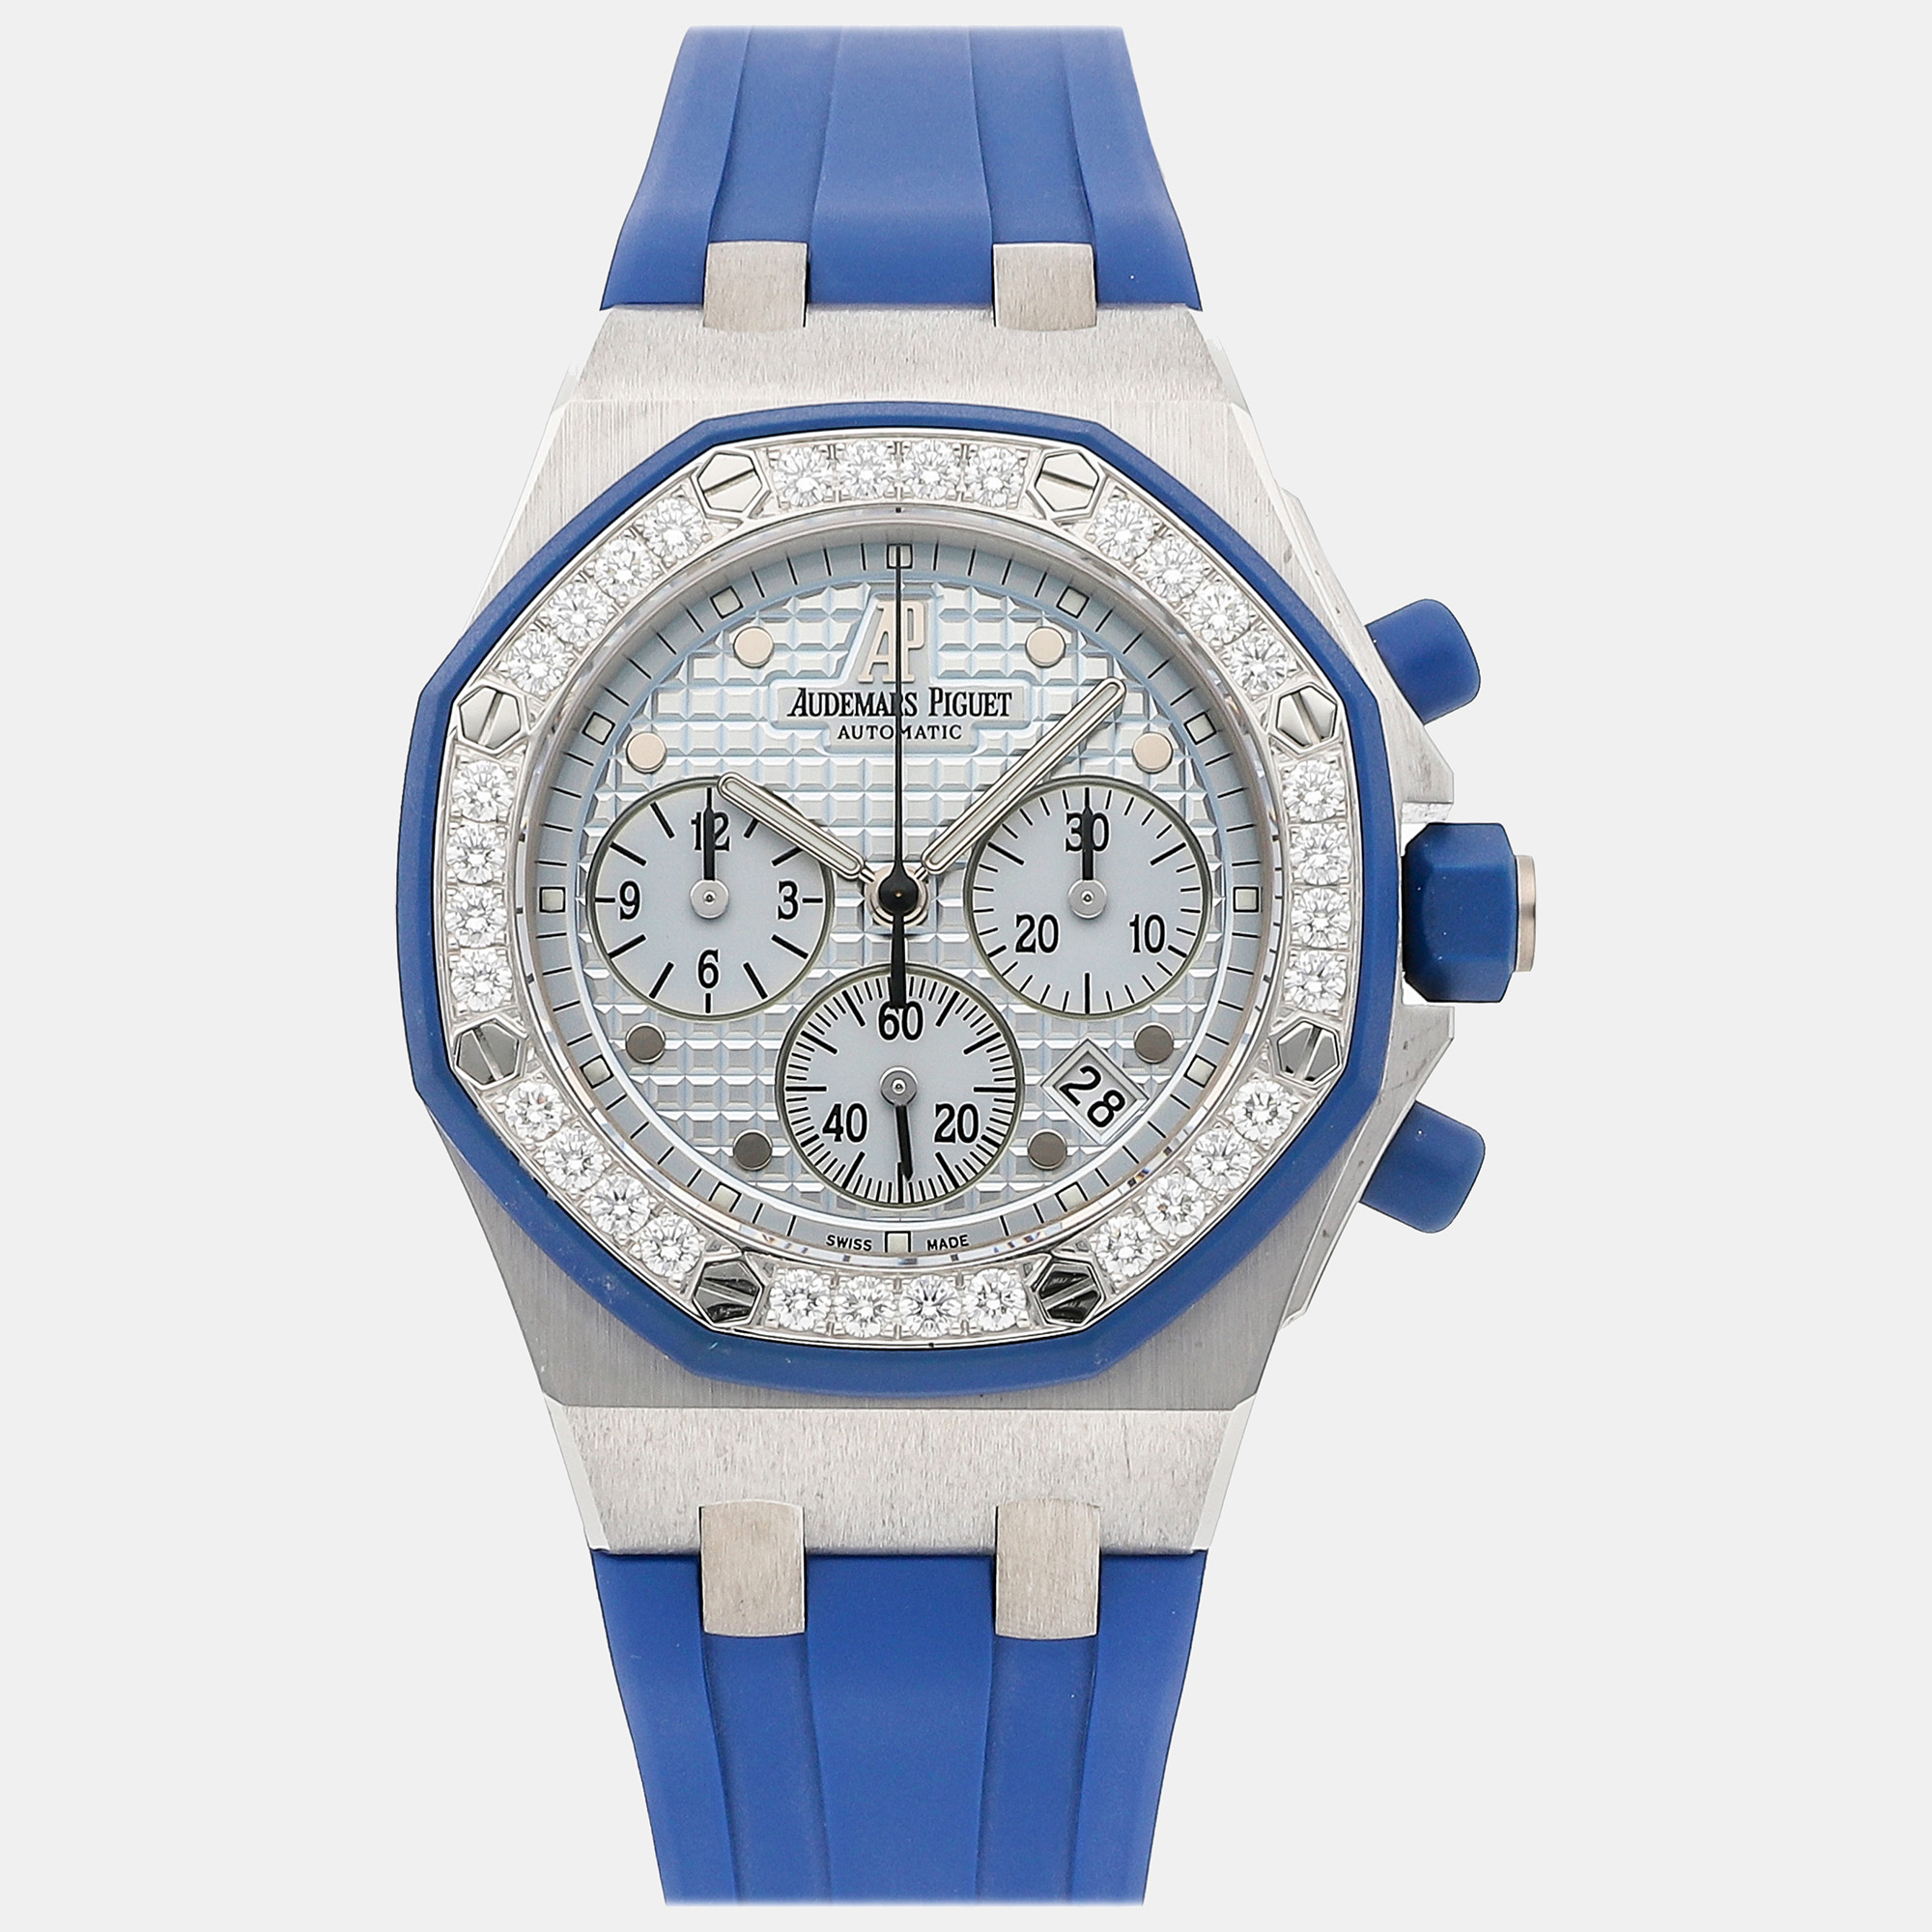 Audemars piguet blue 18k white gold royal oak offshore 25986ck.zz.d020ca.02 automatic men's wristwatch 37 mm